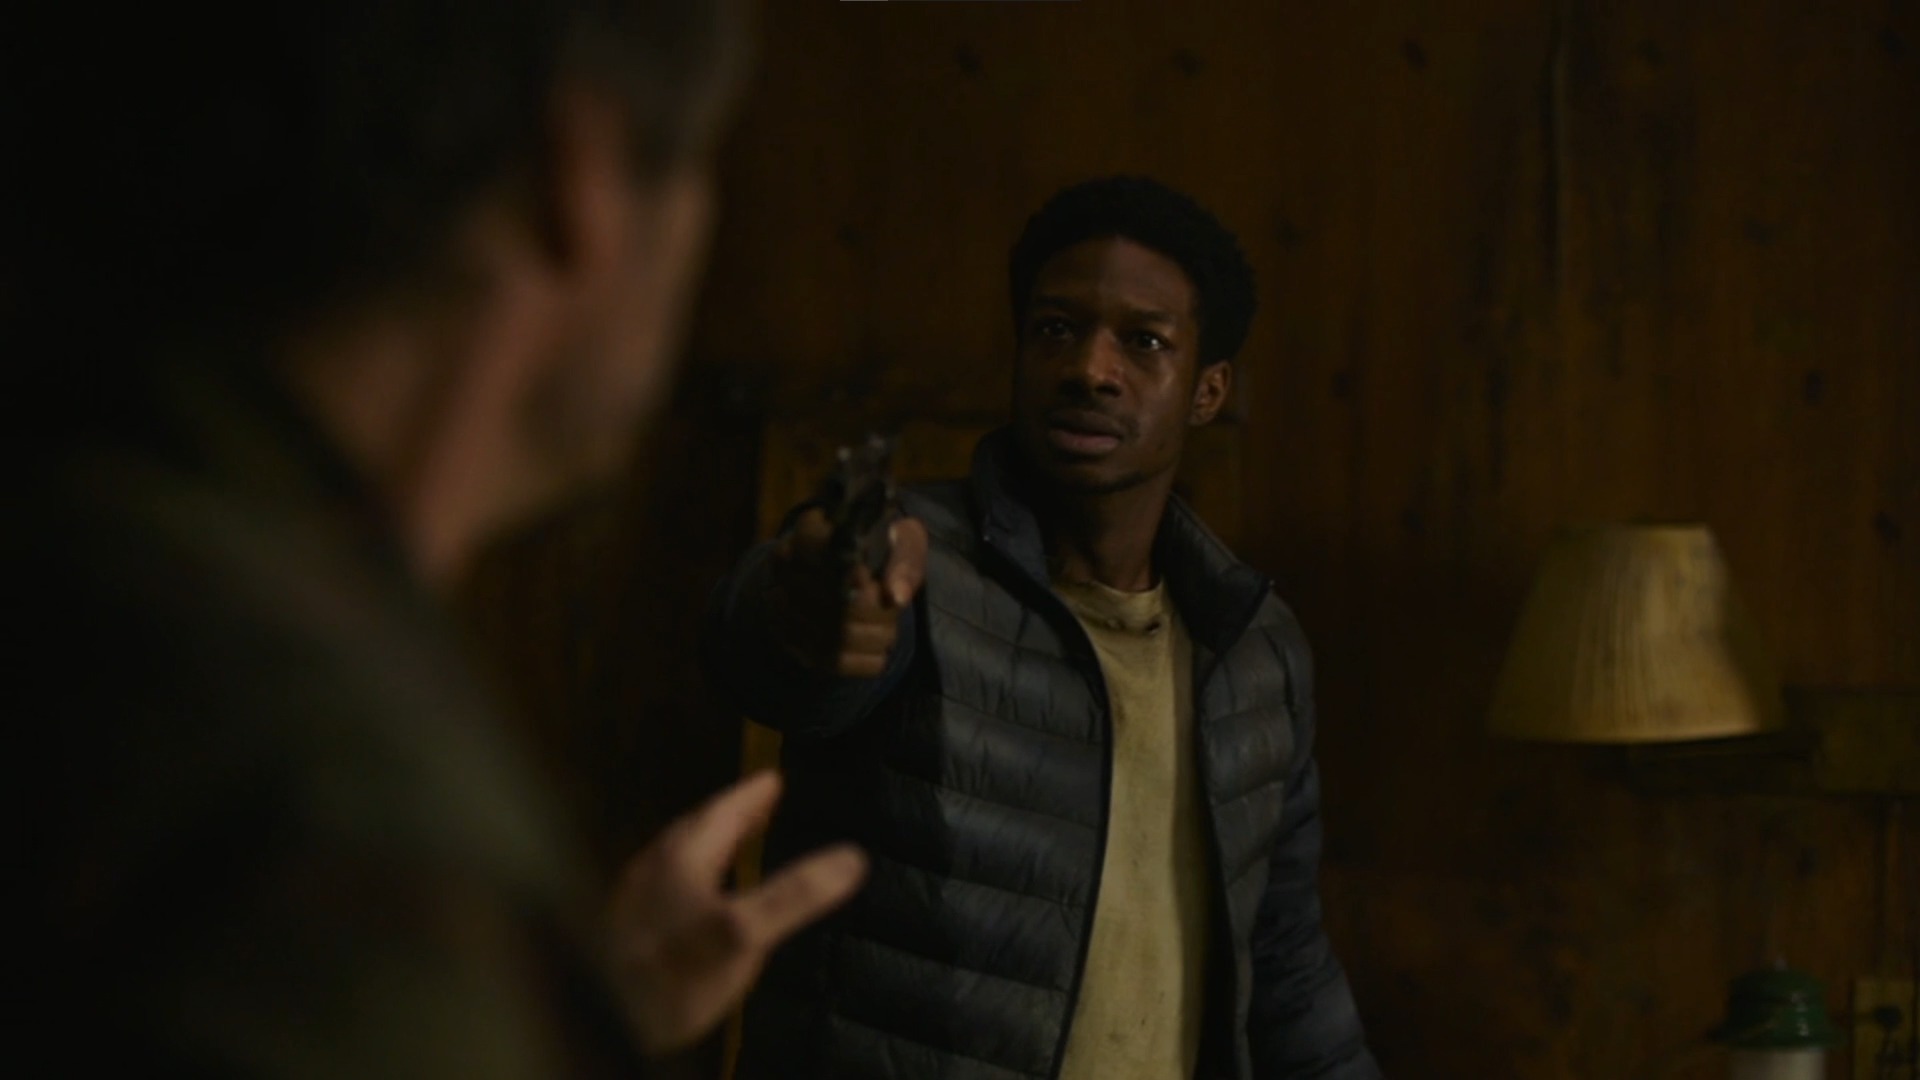 The Last of Us: Henry, Sam e Baiacu na prévia do 5º episódio